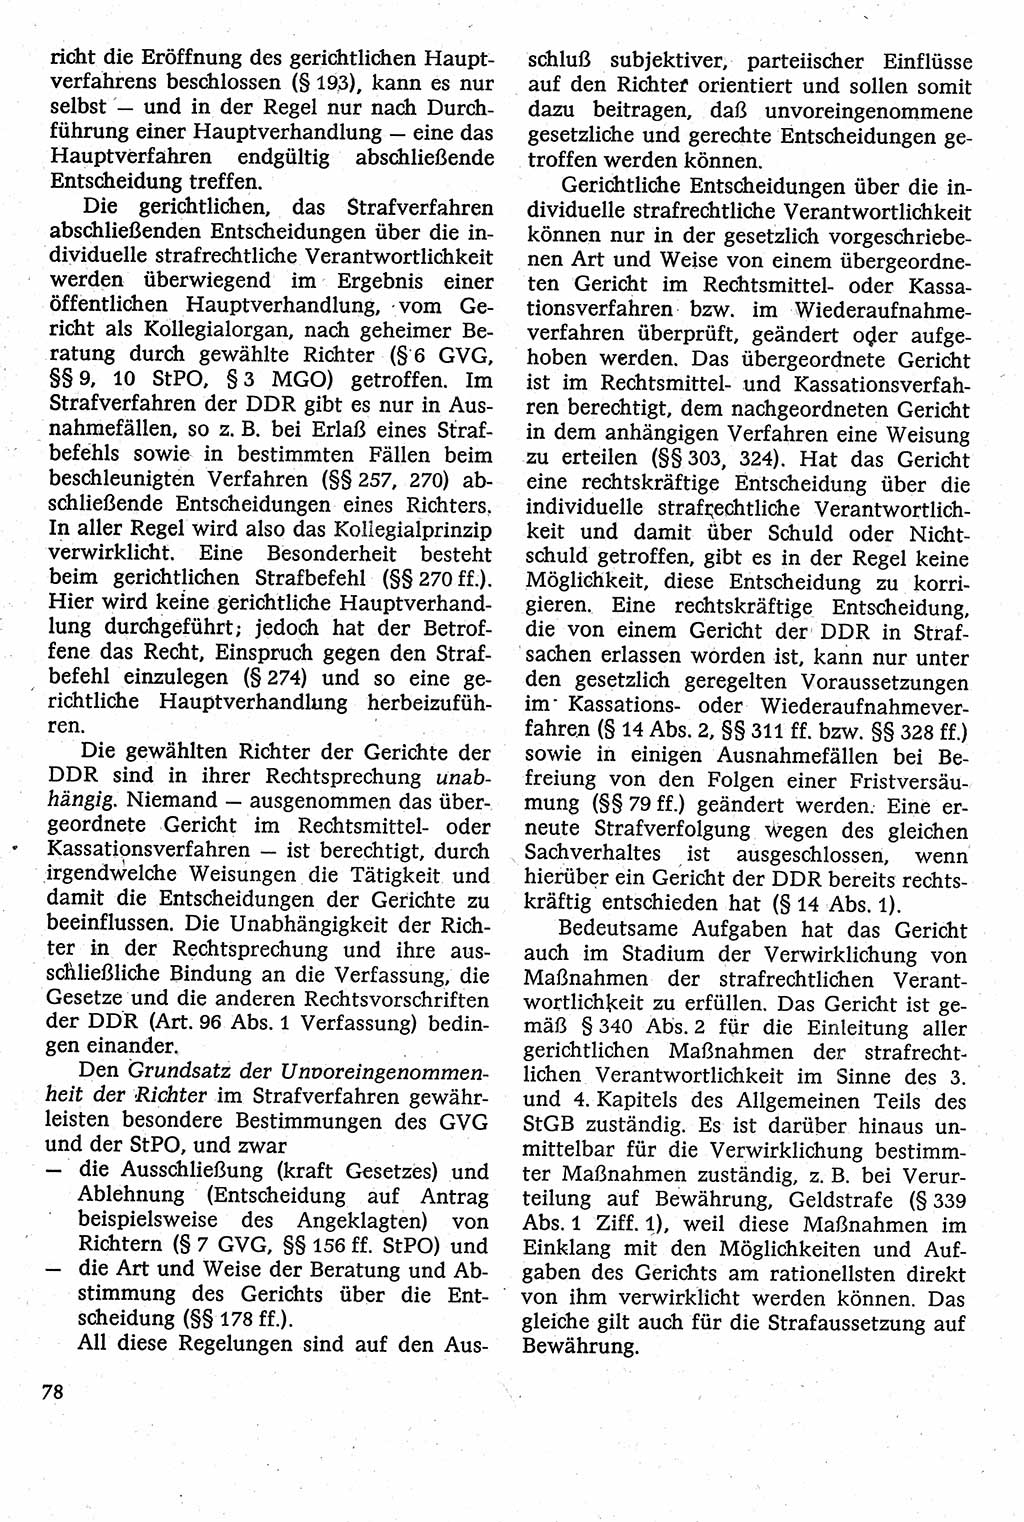 Strafverfahrensrecht [Deutsche Demokratische Republik (DDR)], Lehrbuch 1982, Seite 78 (Strafverf.-R. DDR Lb. 1982, S. 78)